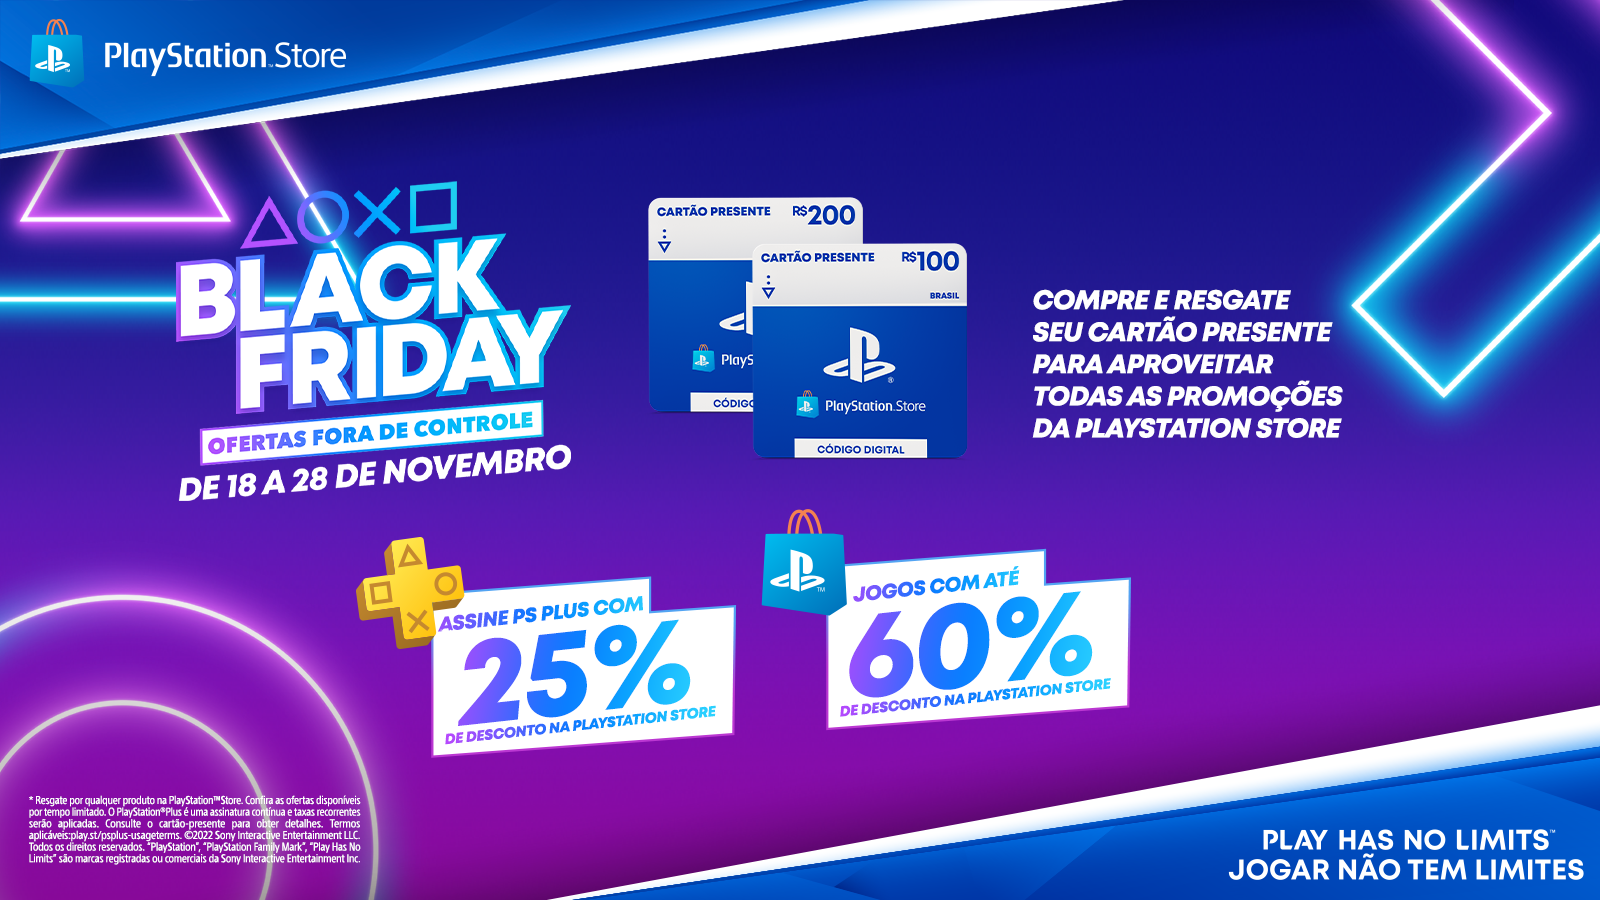 Já começou a Black Friday no PlayStation! Desconto de 25% na PS Plus e  jogos com até 60% de desconto! - Trivia PW